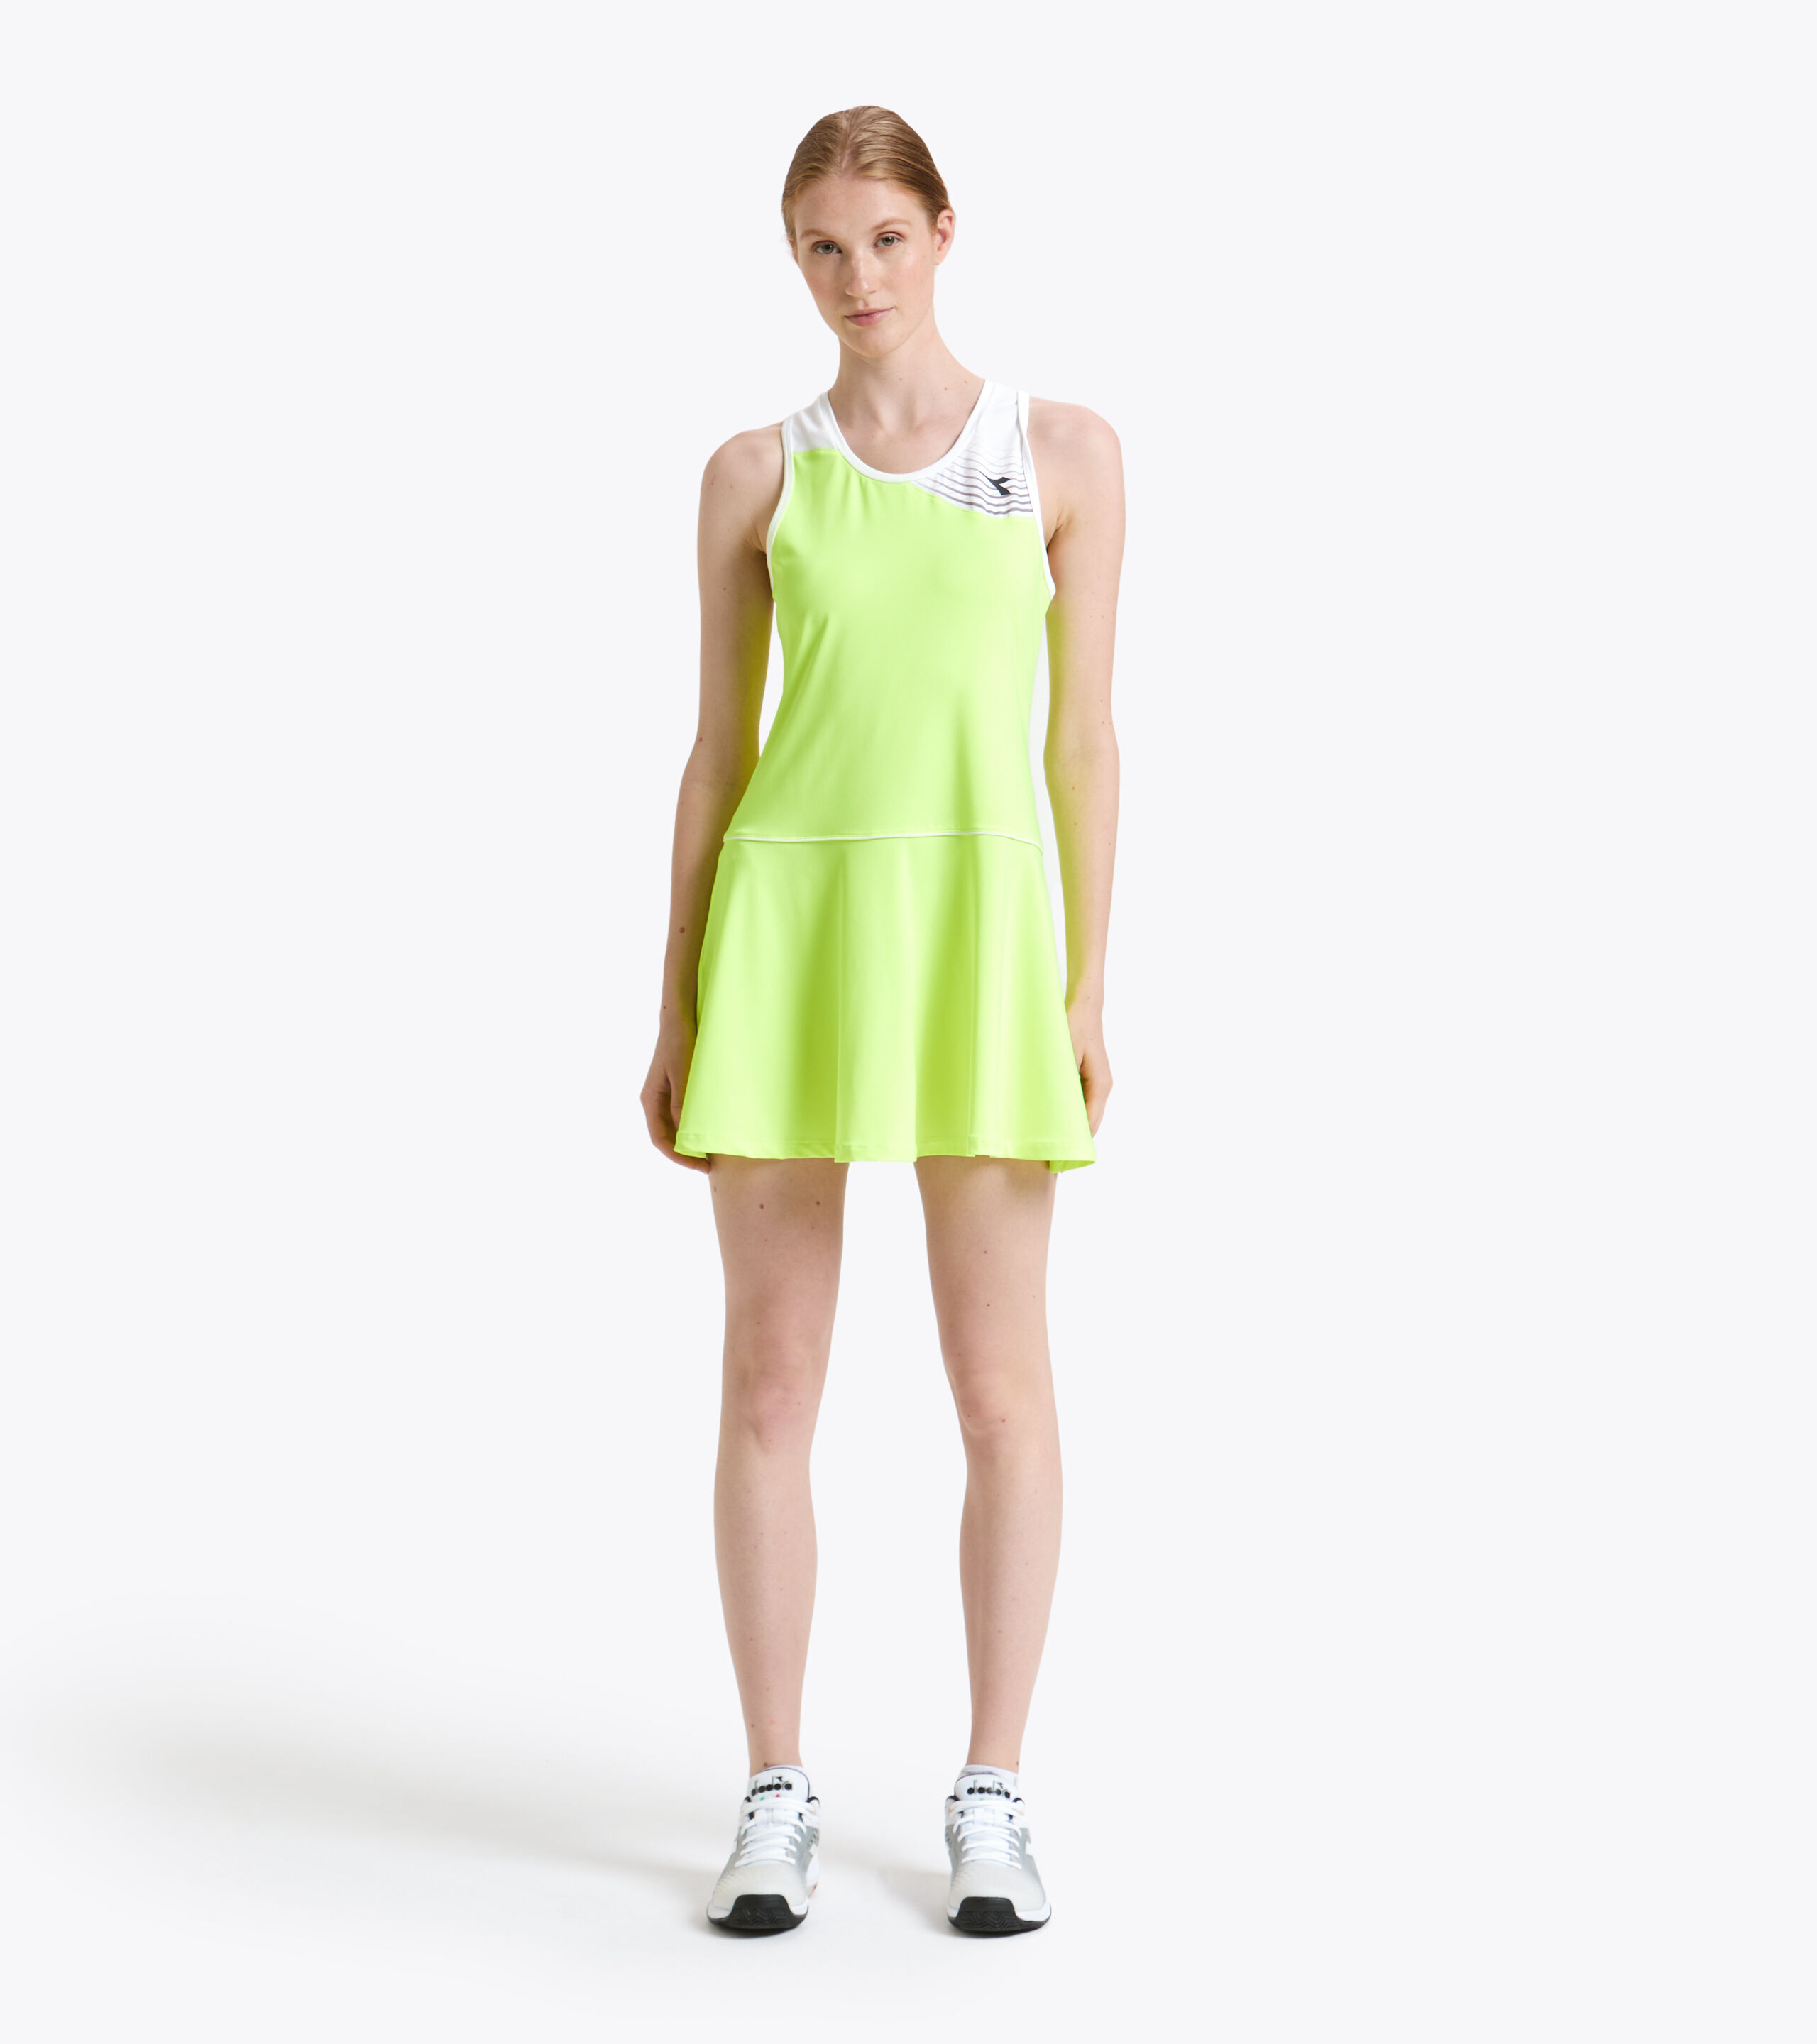 L. DRESS COURT Tennis dress - Women ...